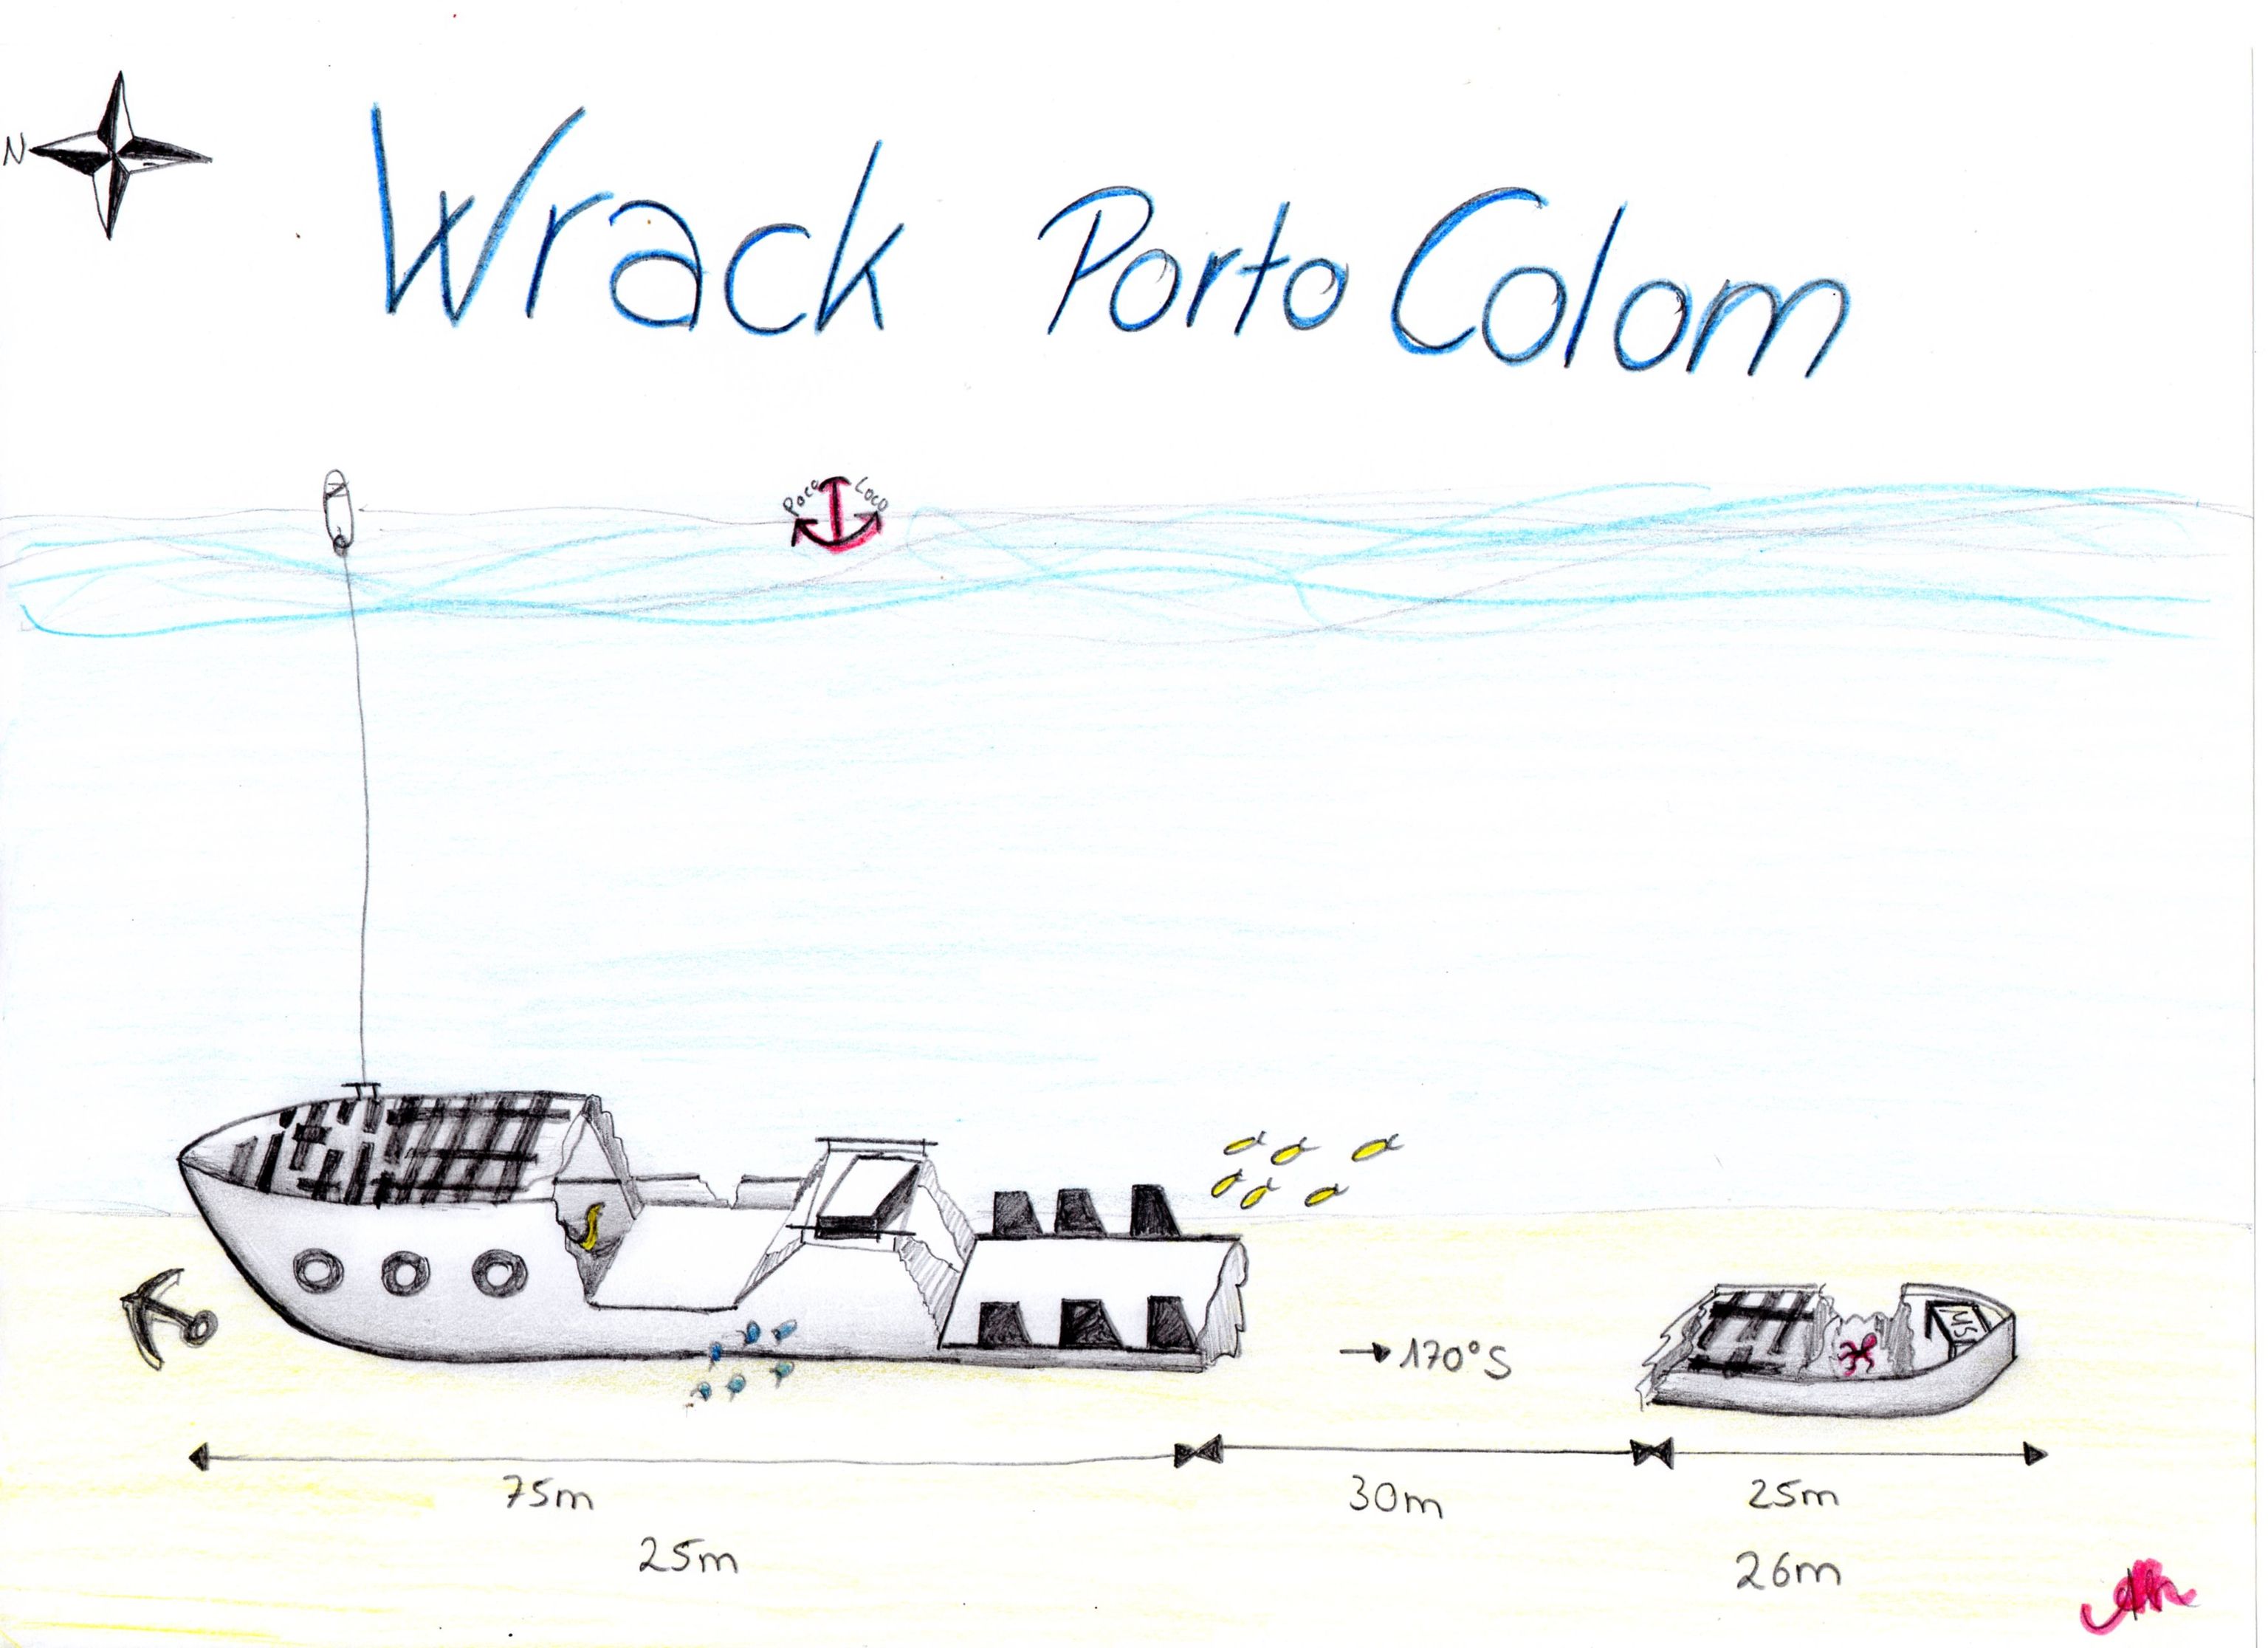 Wrack Porto Colom